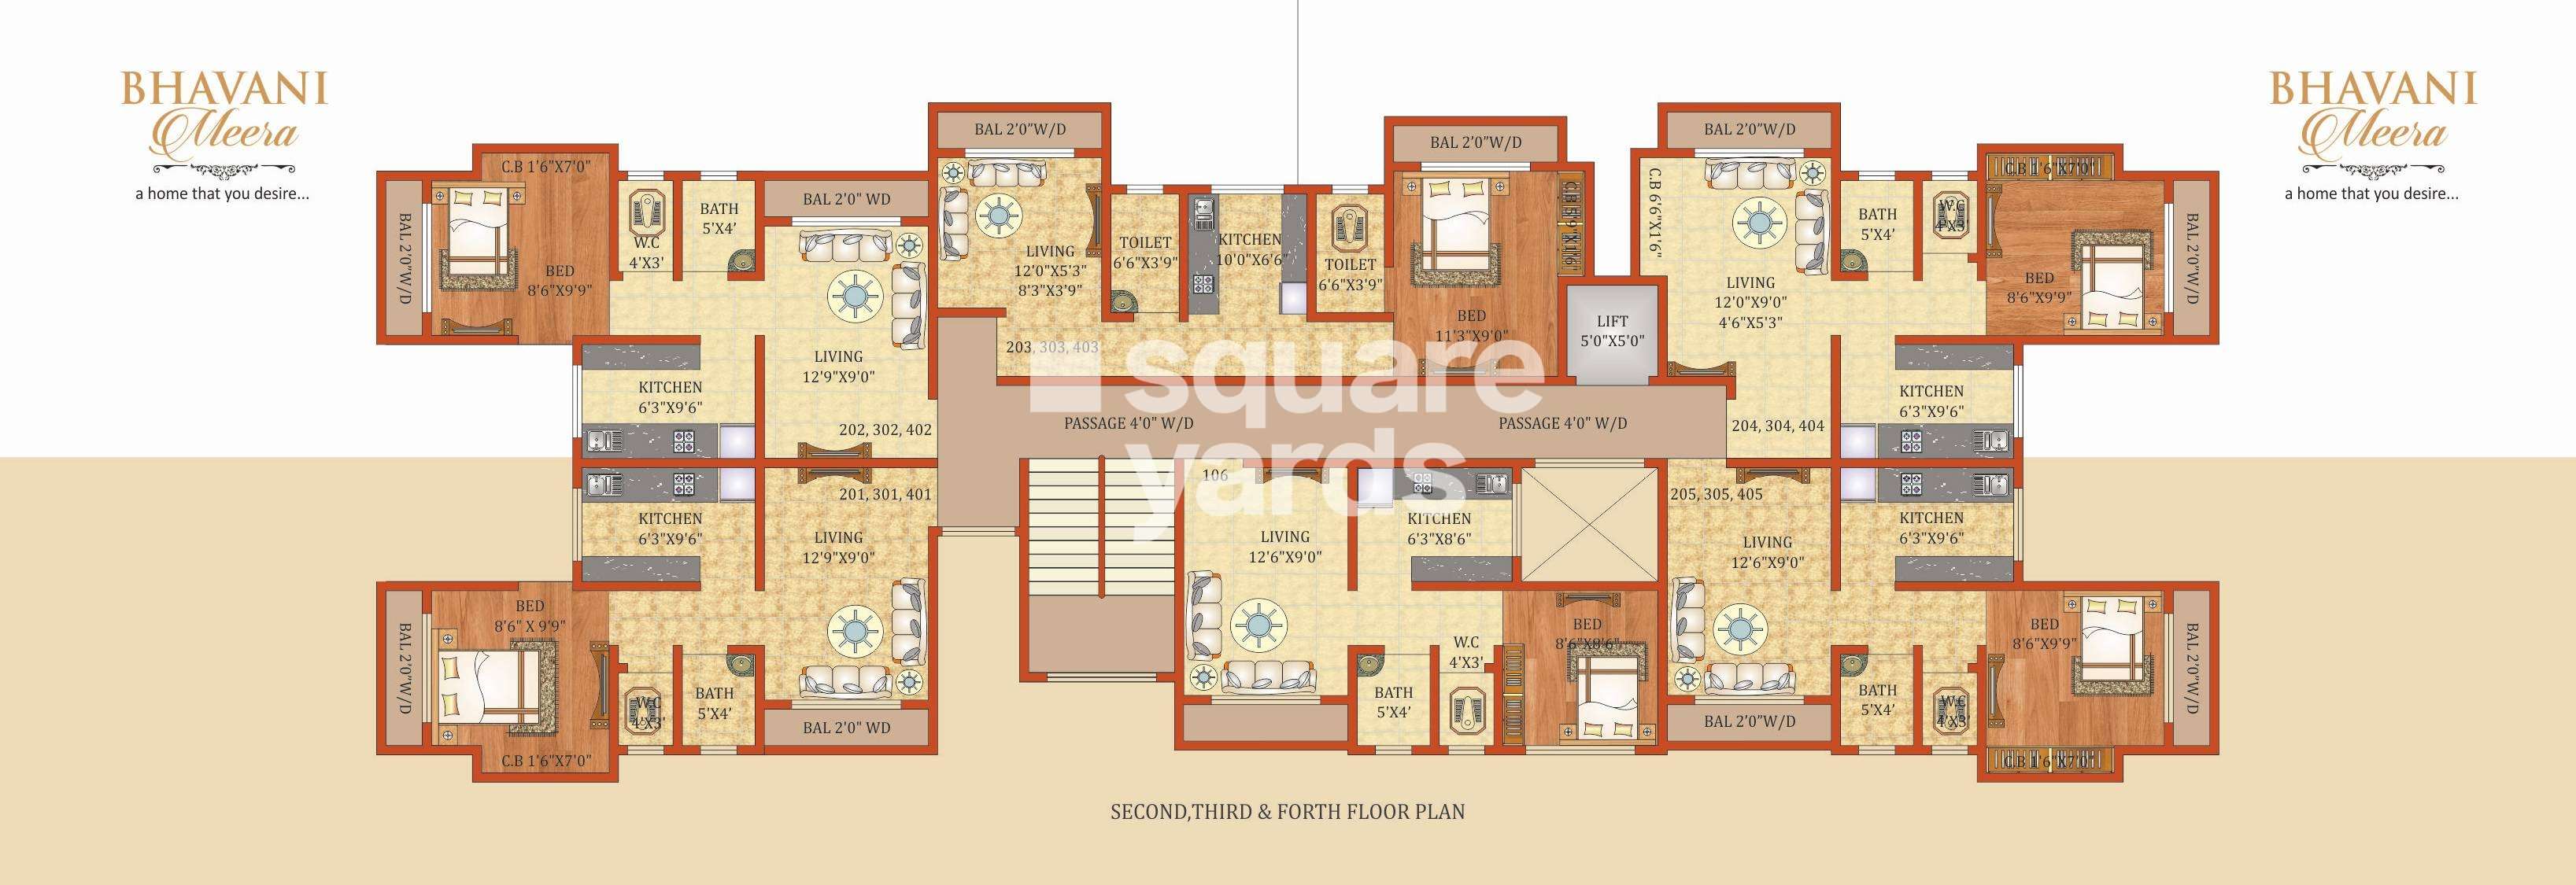 bhavani meera project floor plans1 4989